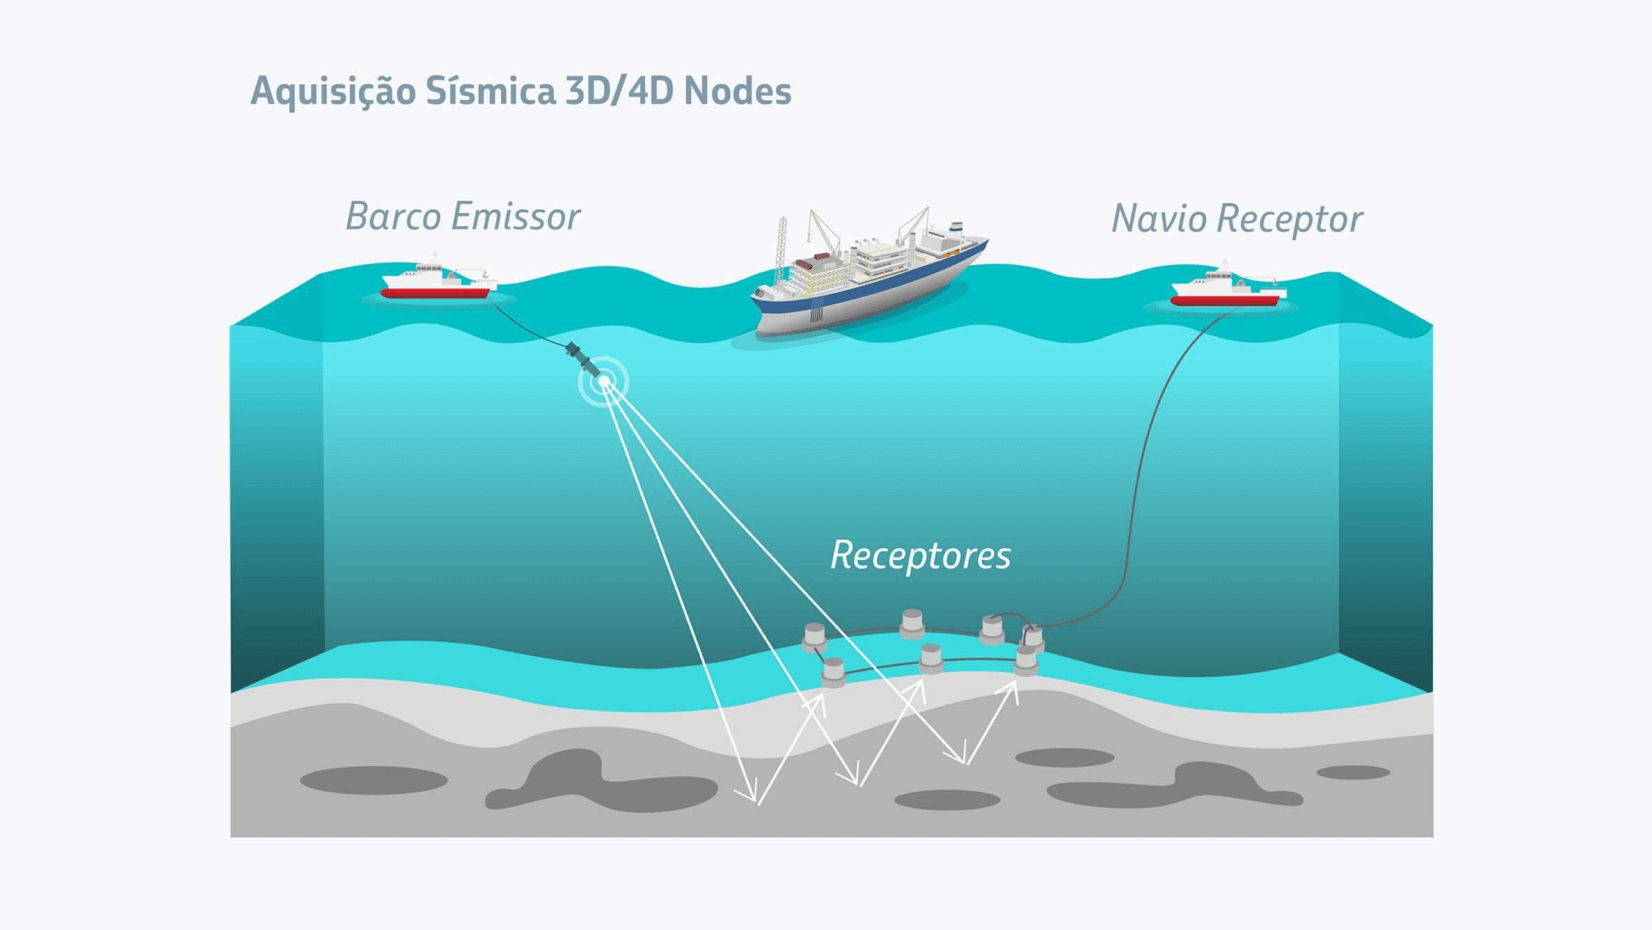 Ilustrações mostrando funcionando de aquisições sísmicas 4D e 3D da Petrobras.